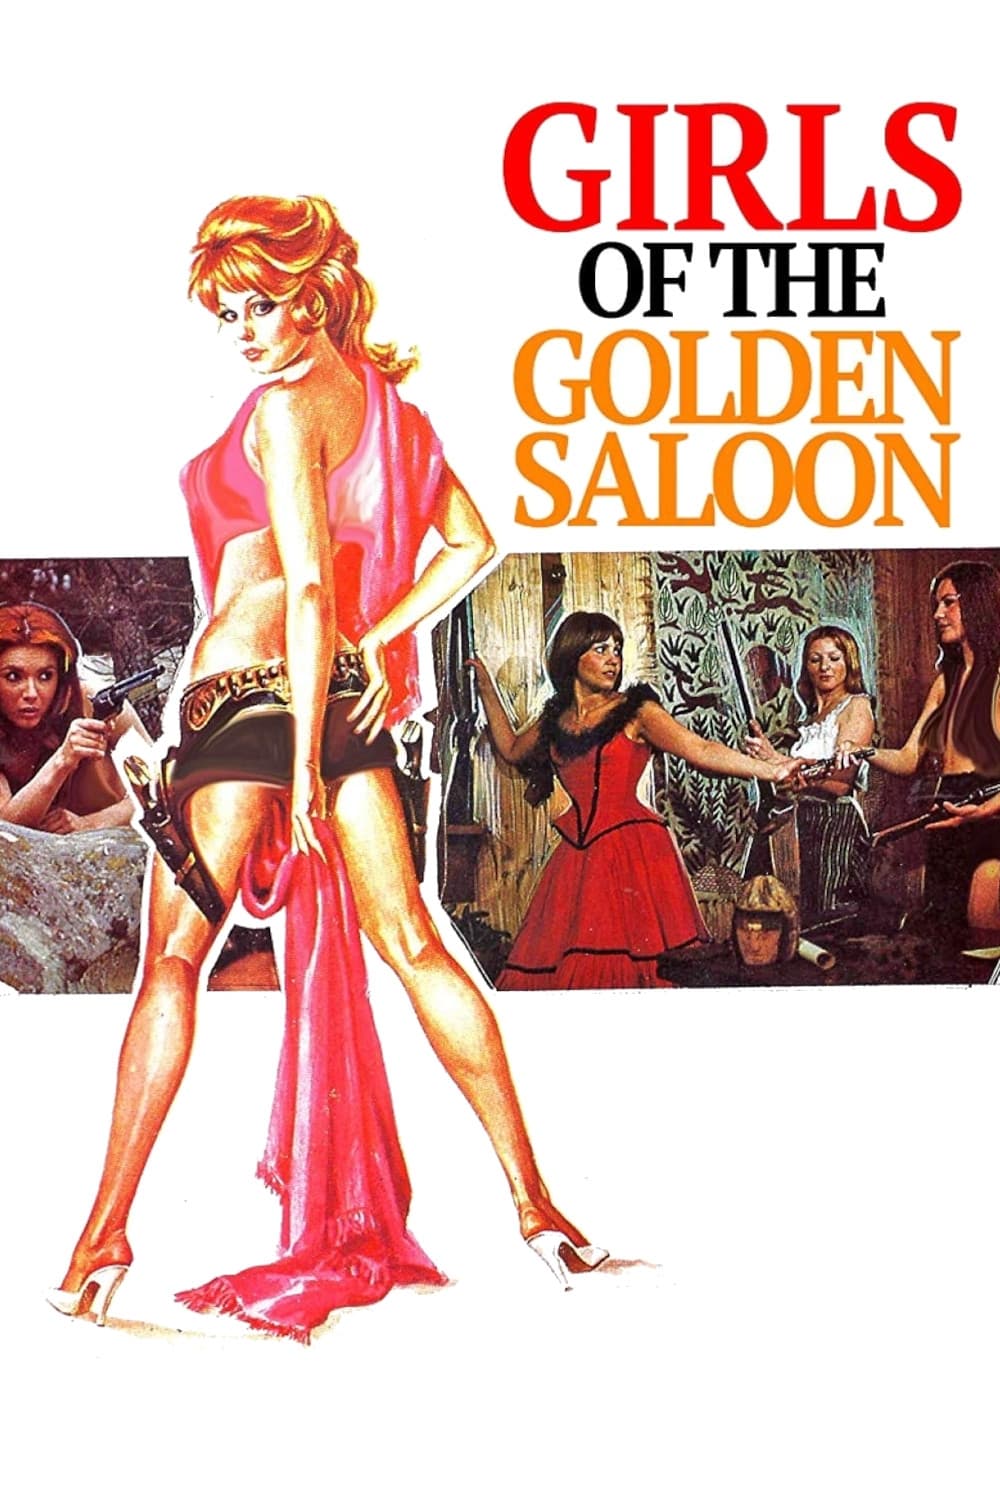 Las chicas del Saloon Dorado (1975)